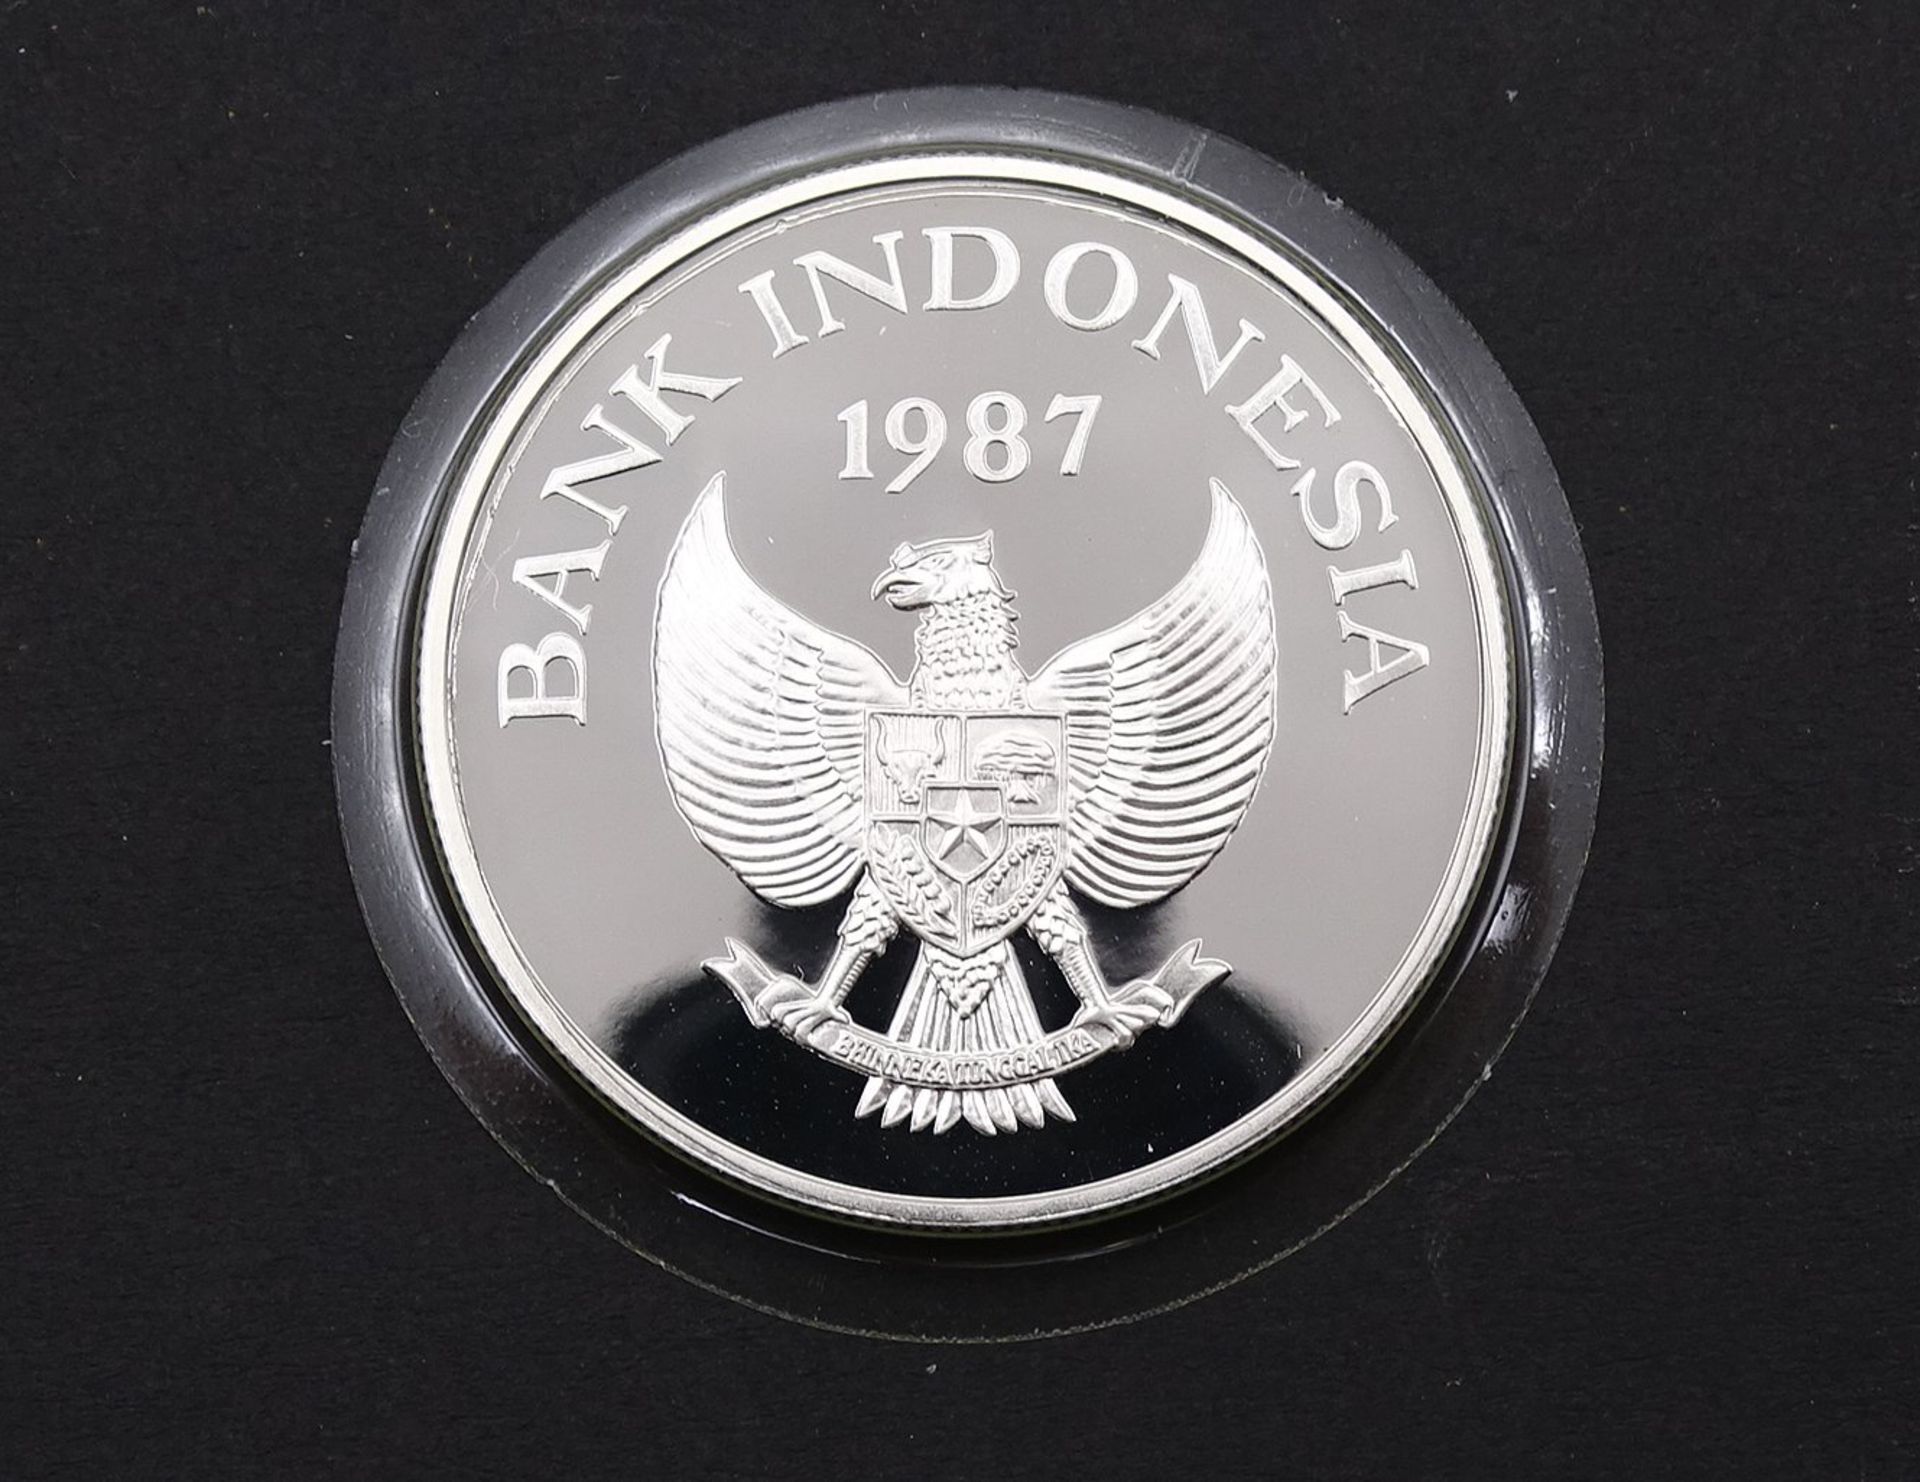 Silbermünze Rp 10000 , 1987 Bank Indonesia,19,4g. Silber 0.925, gekapselt - Bild 2 aus 2